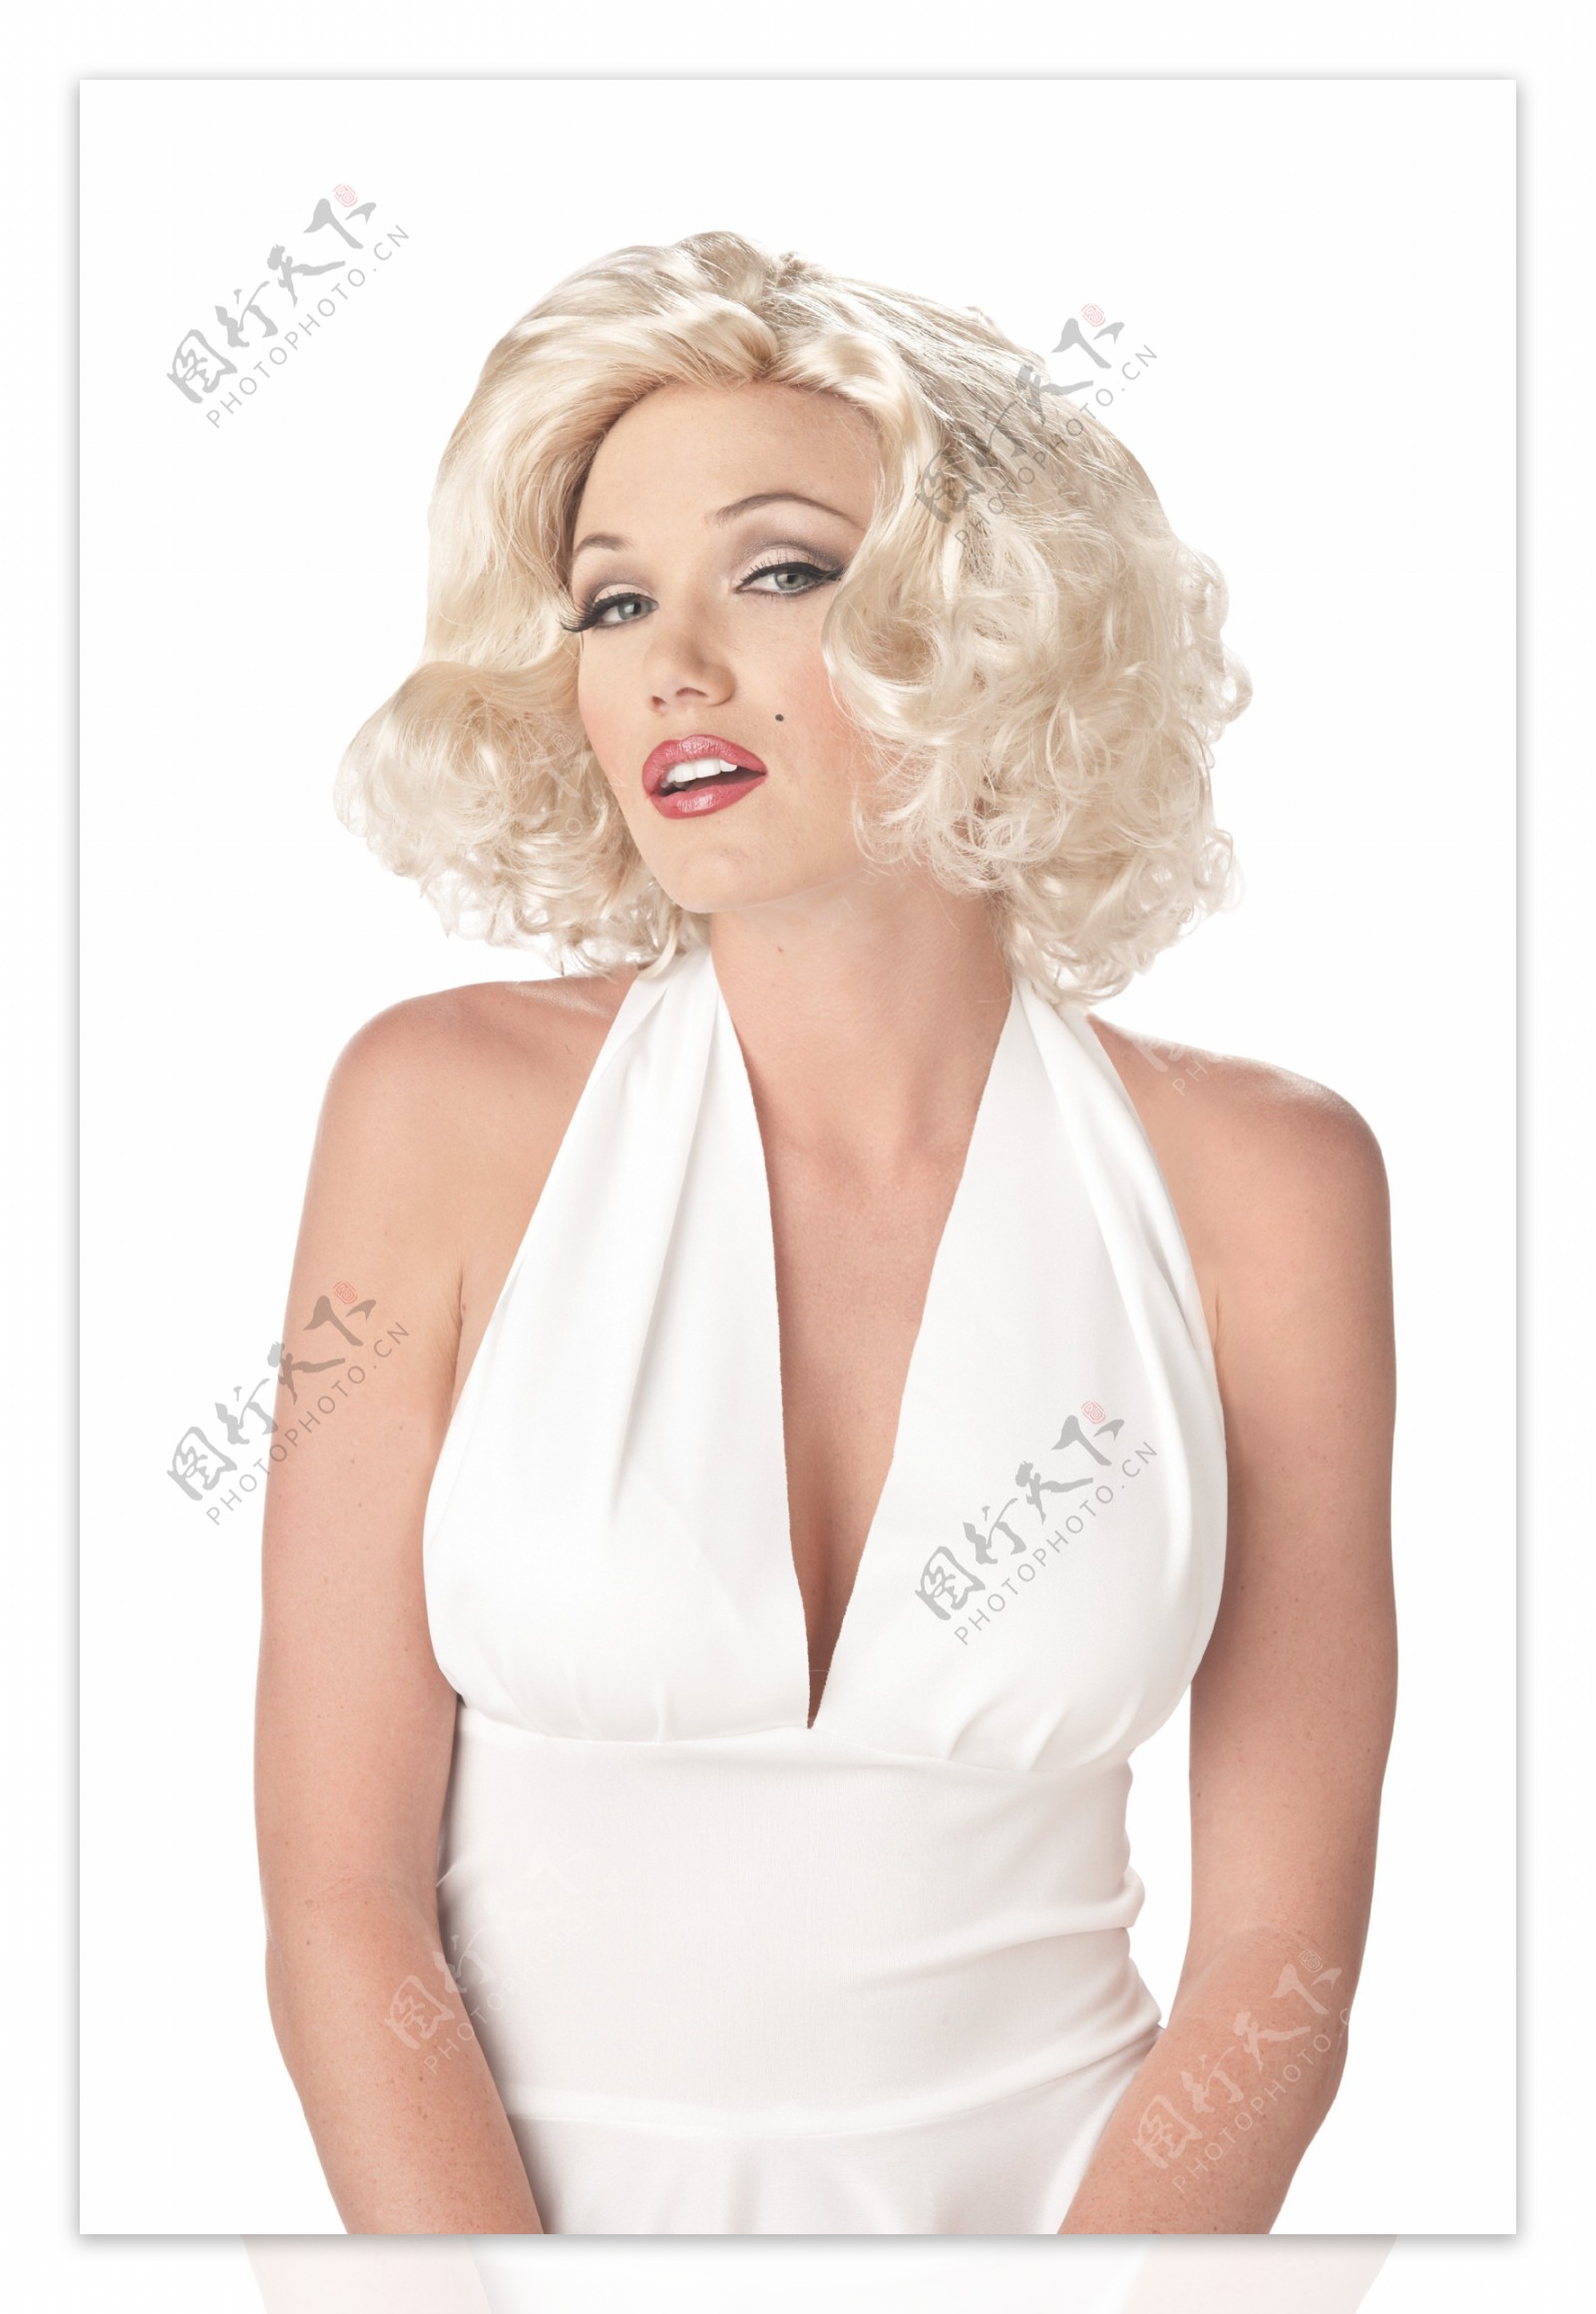 穿白色裙子的性感美女模特图片